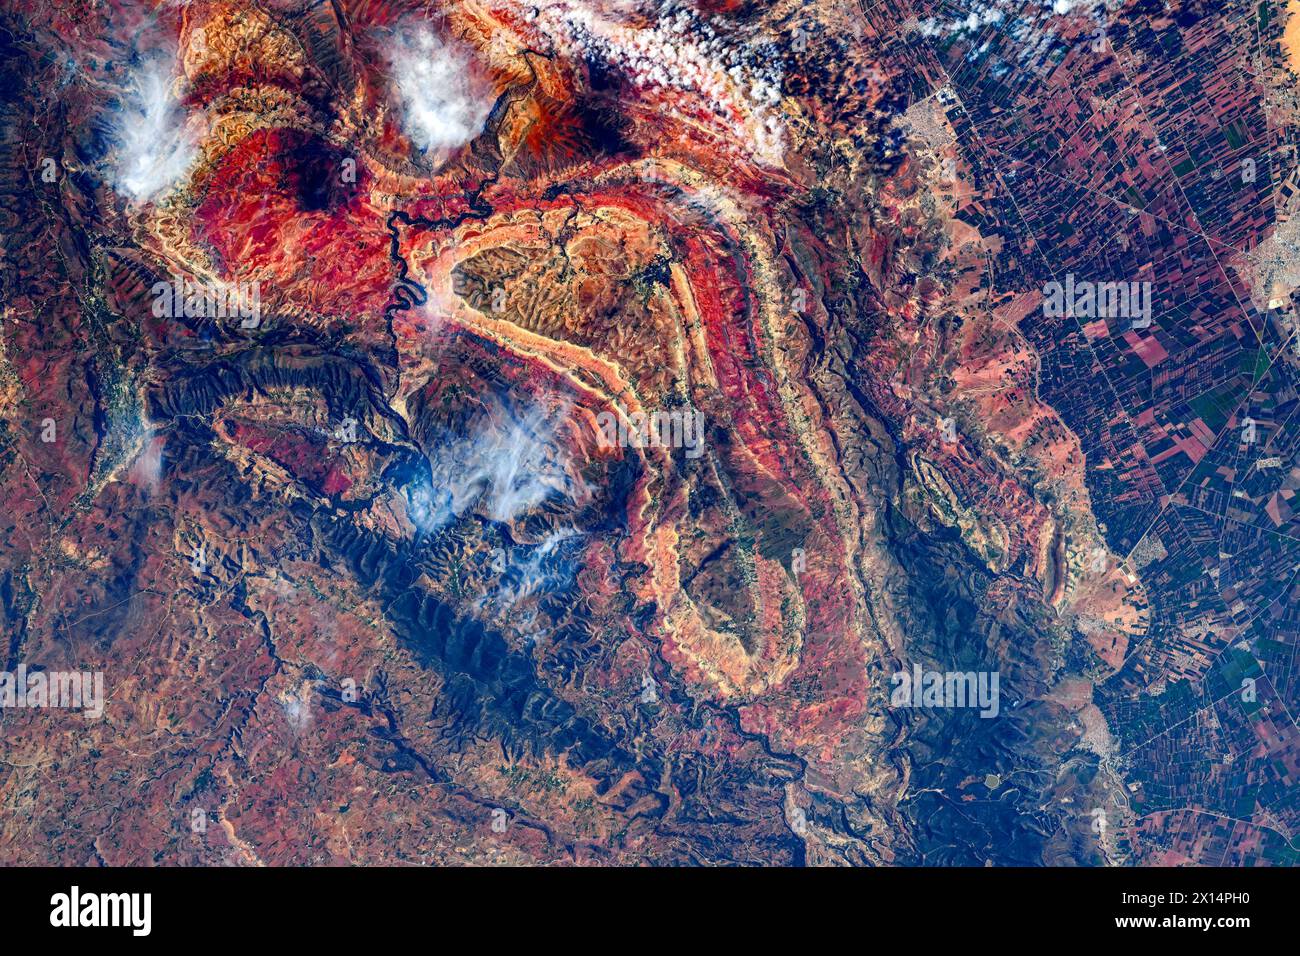 Caractéristiques du terrain au Maroc. Amélioration numérique d'une image par la NASA Banque D'Images